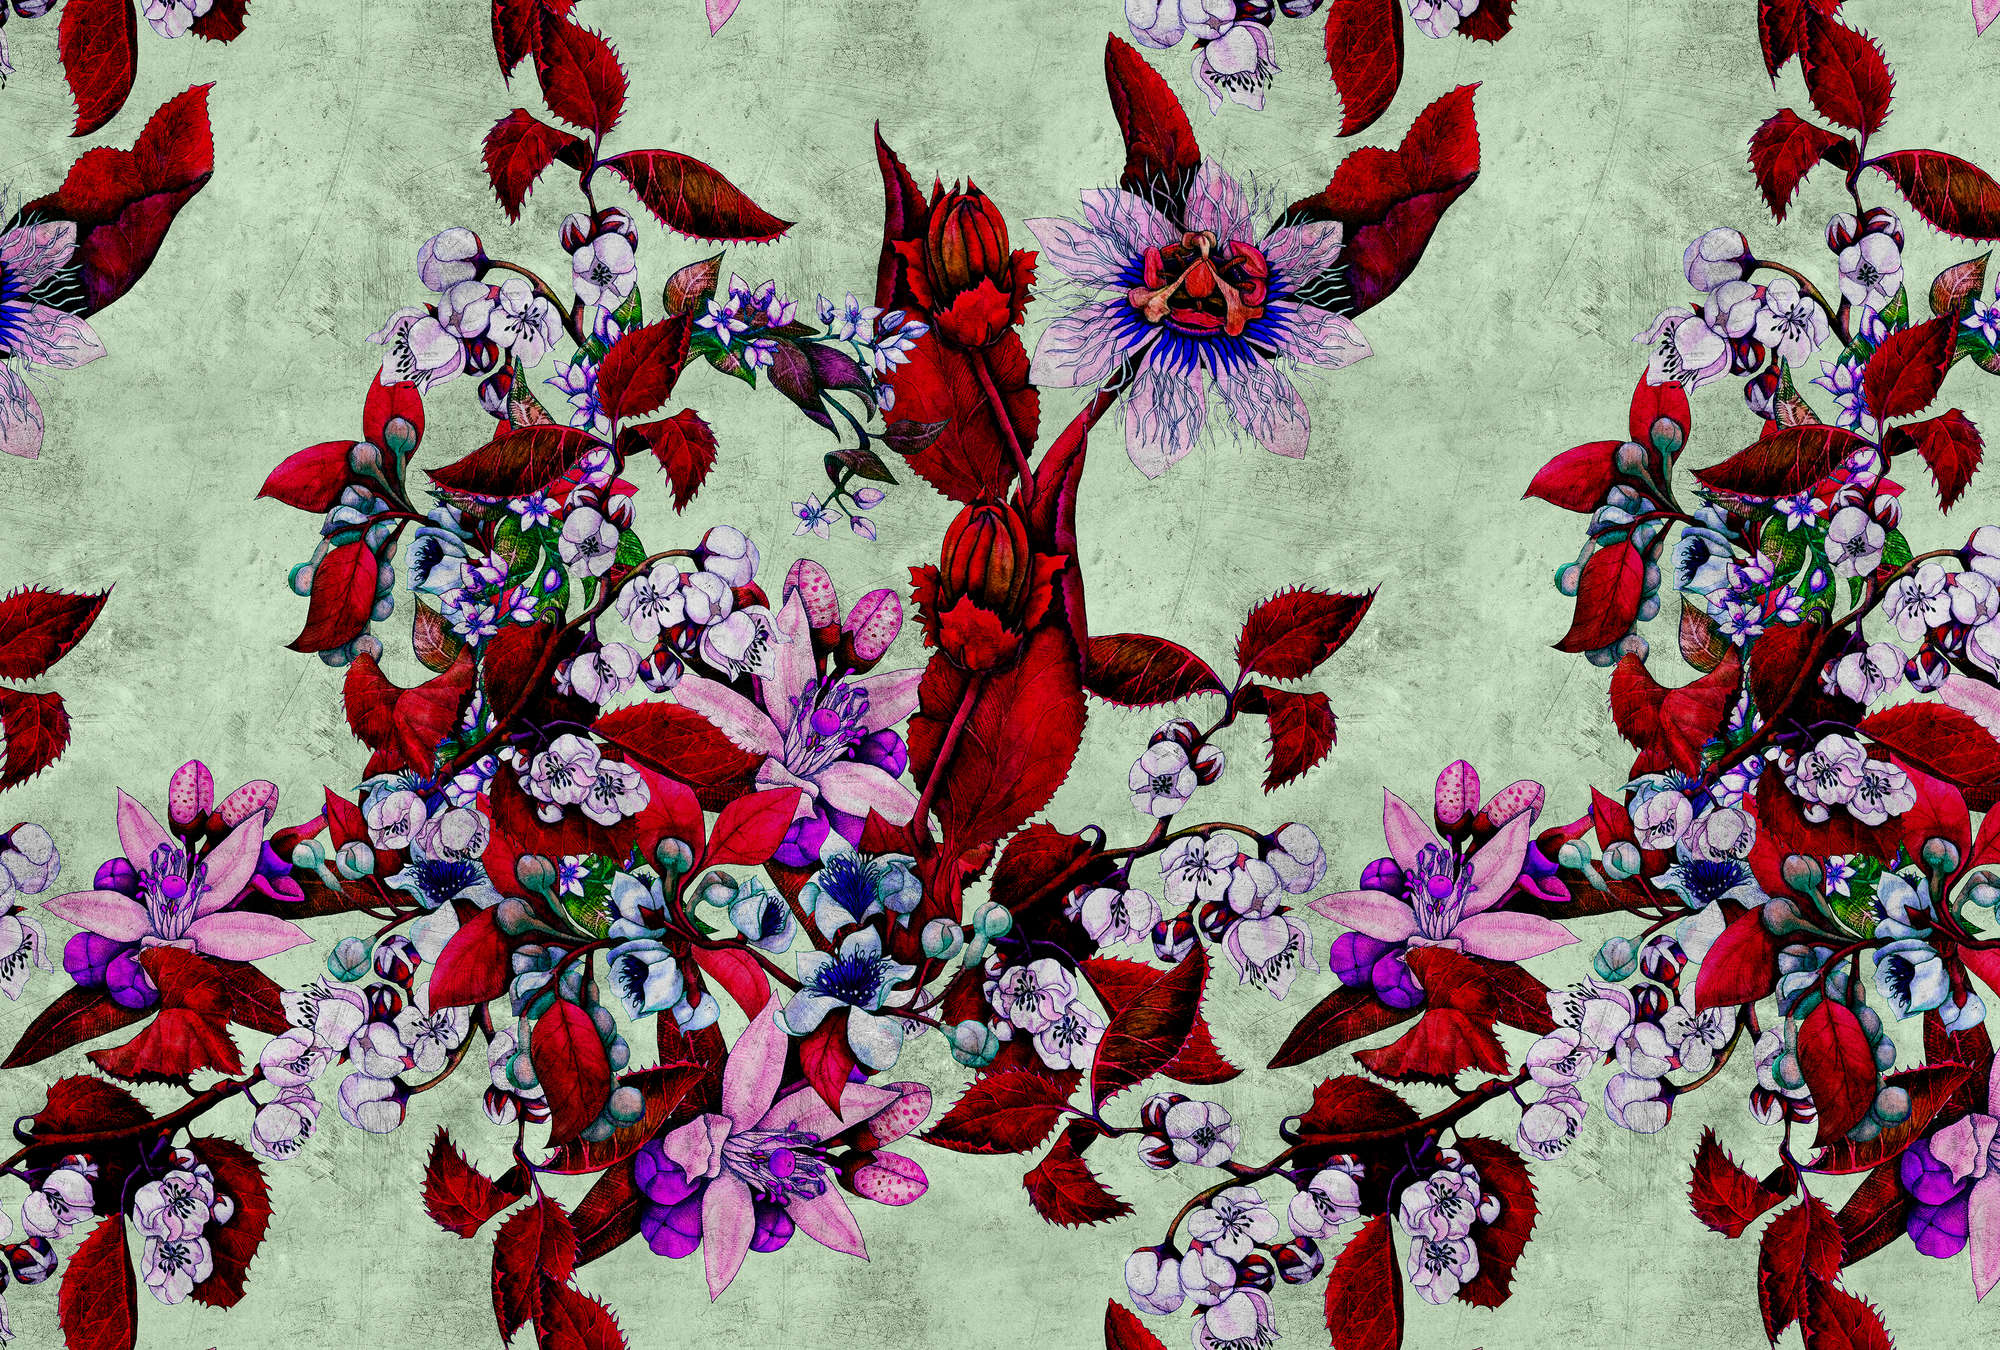             Tropical Passion 3 - Digital behang met speels bloemendesign - Krastextuur - Groen, Rood | Pearl Smooth Non-woven
        